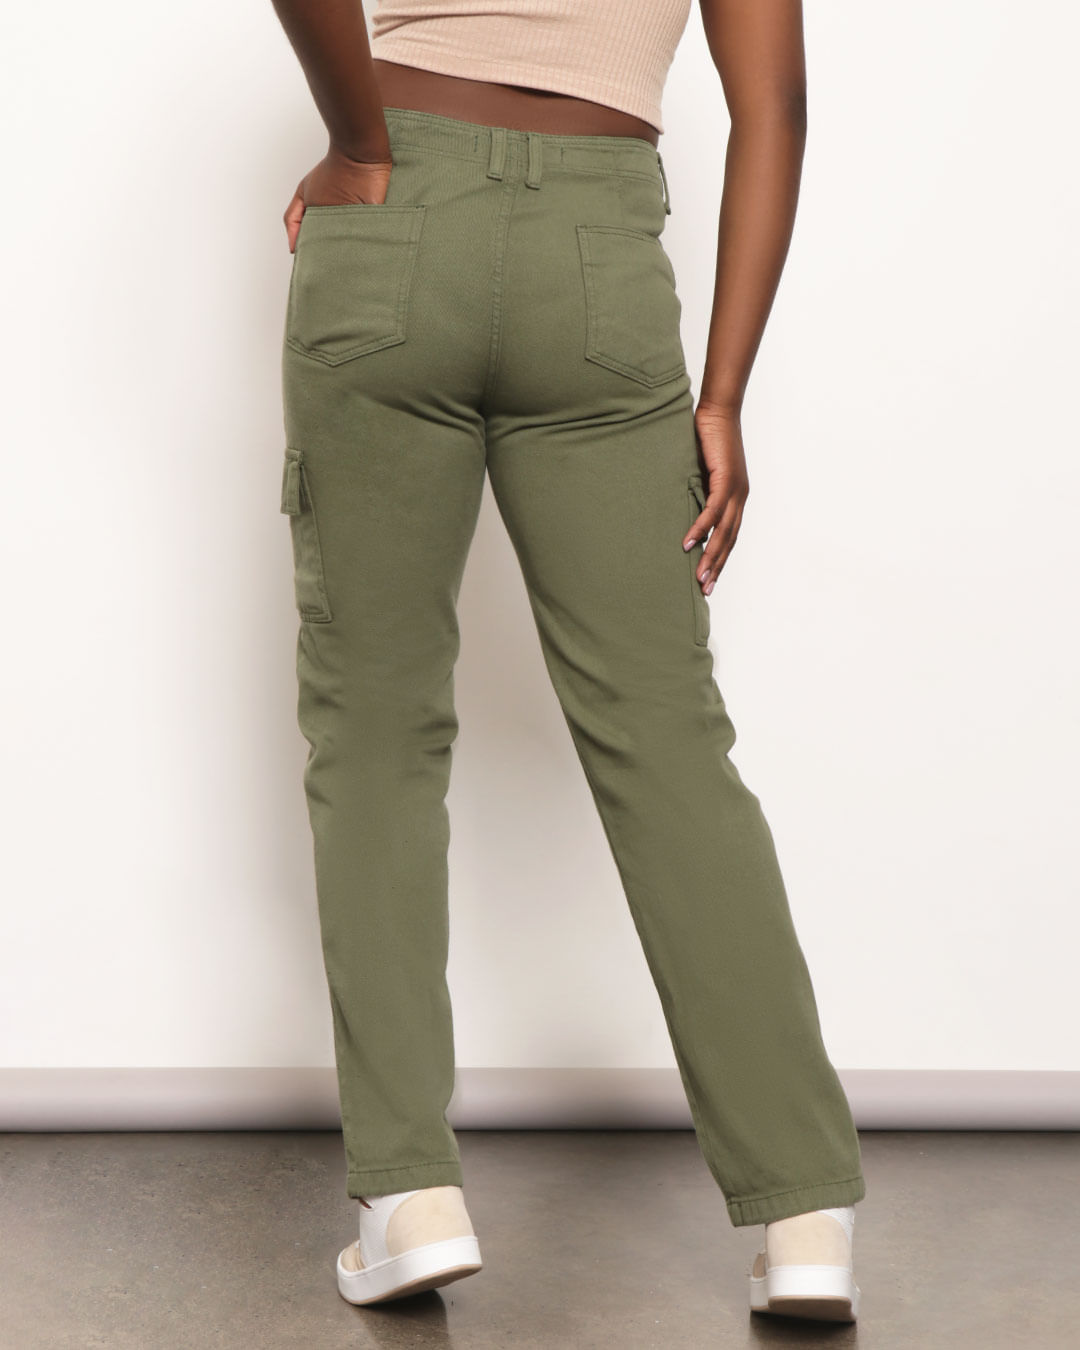 Calça verde cargo feminina com design de bolso, botão de cintura